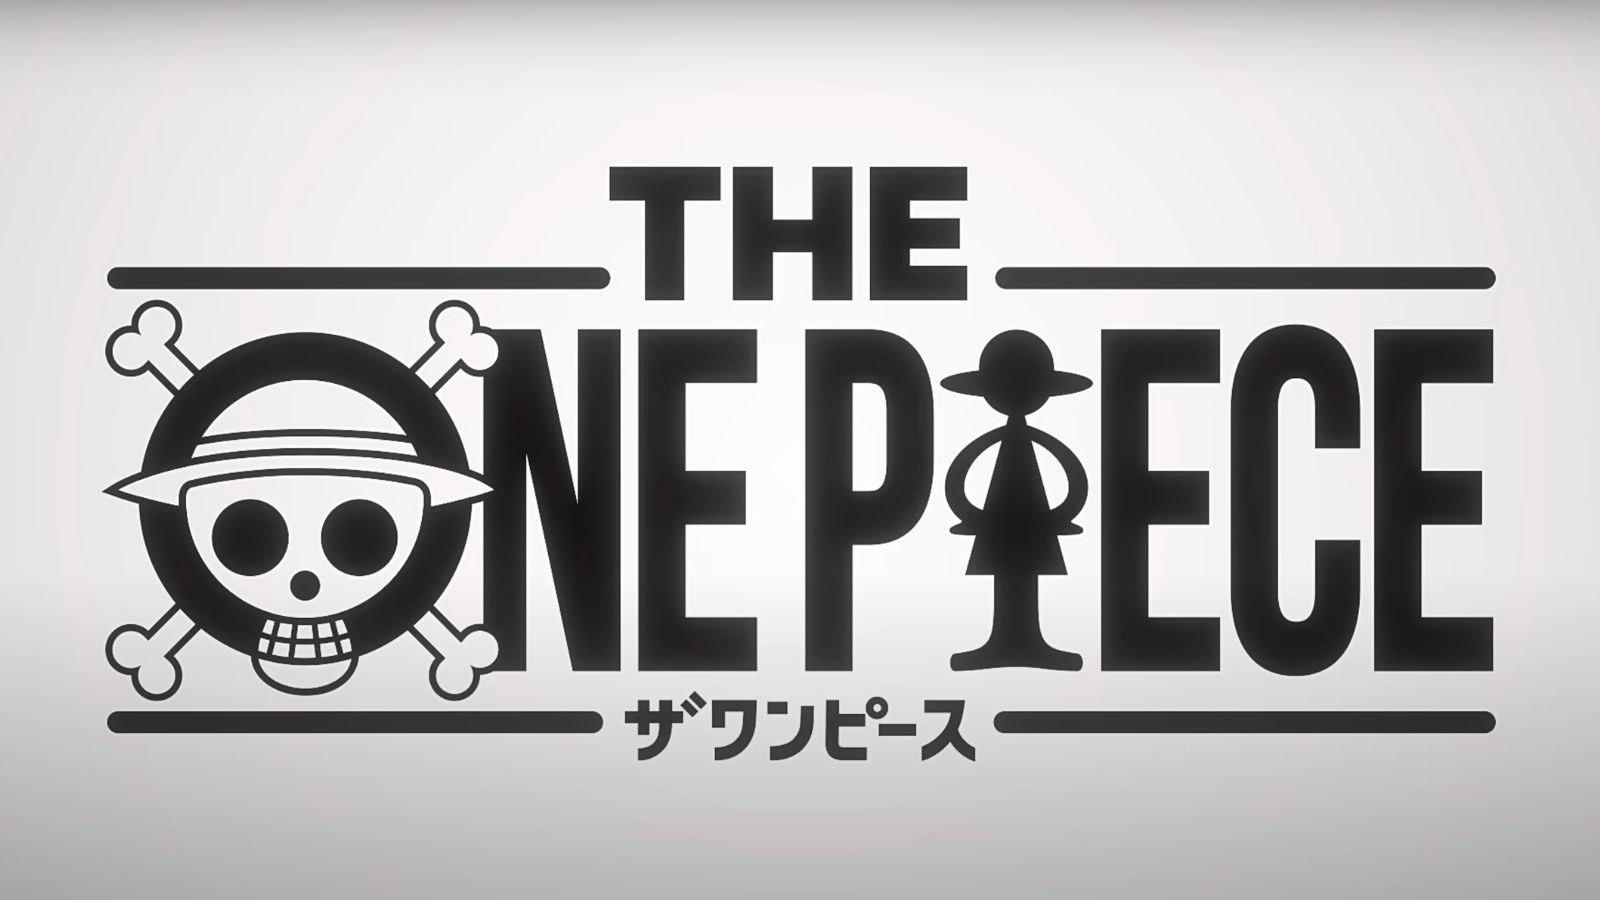 The Original One Piece Anime 